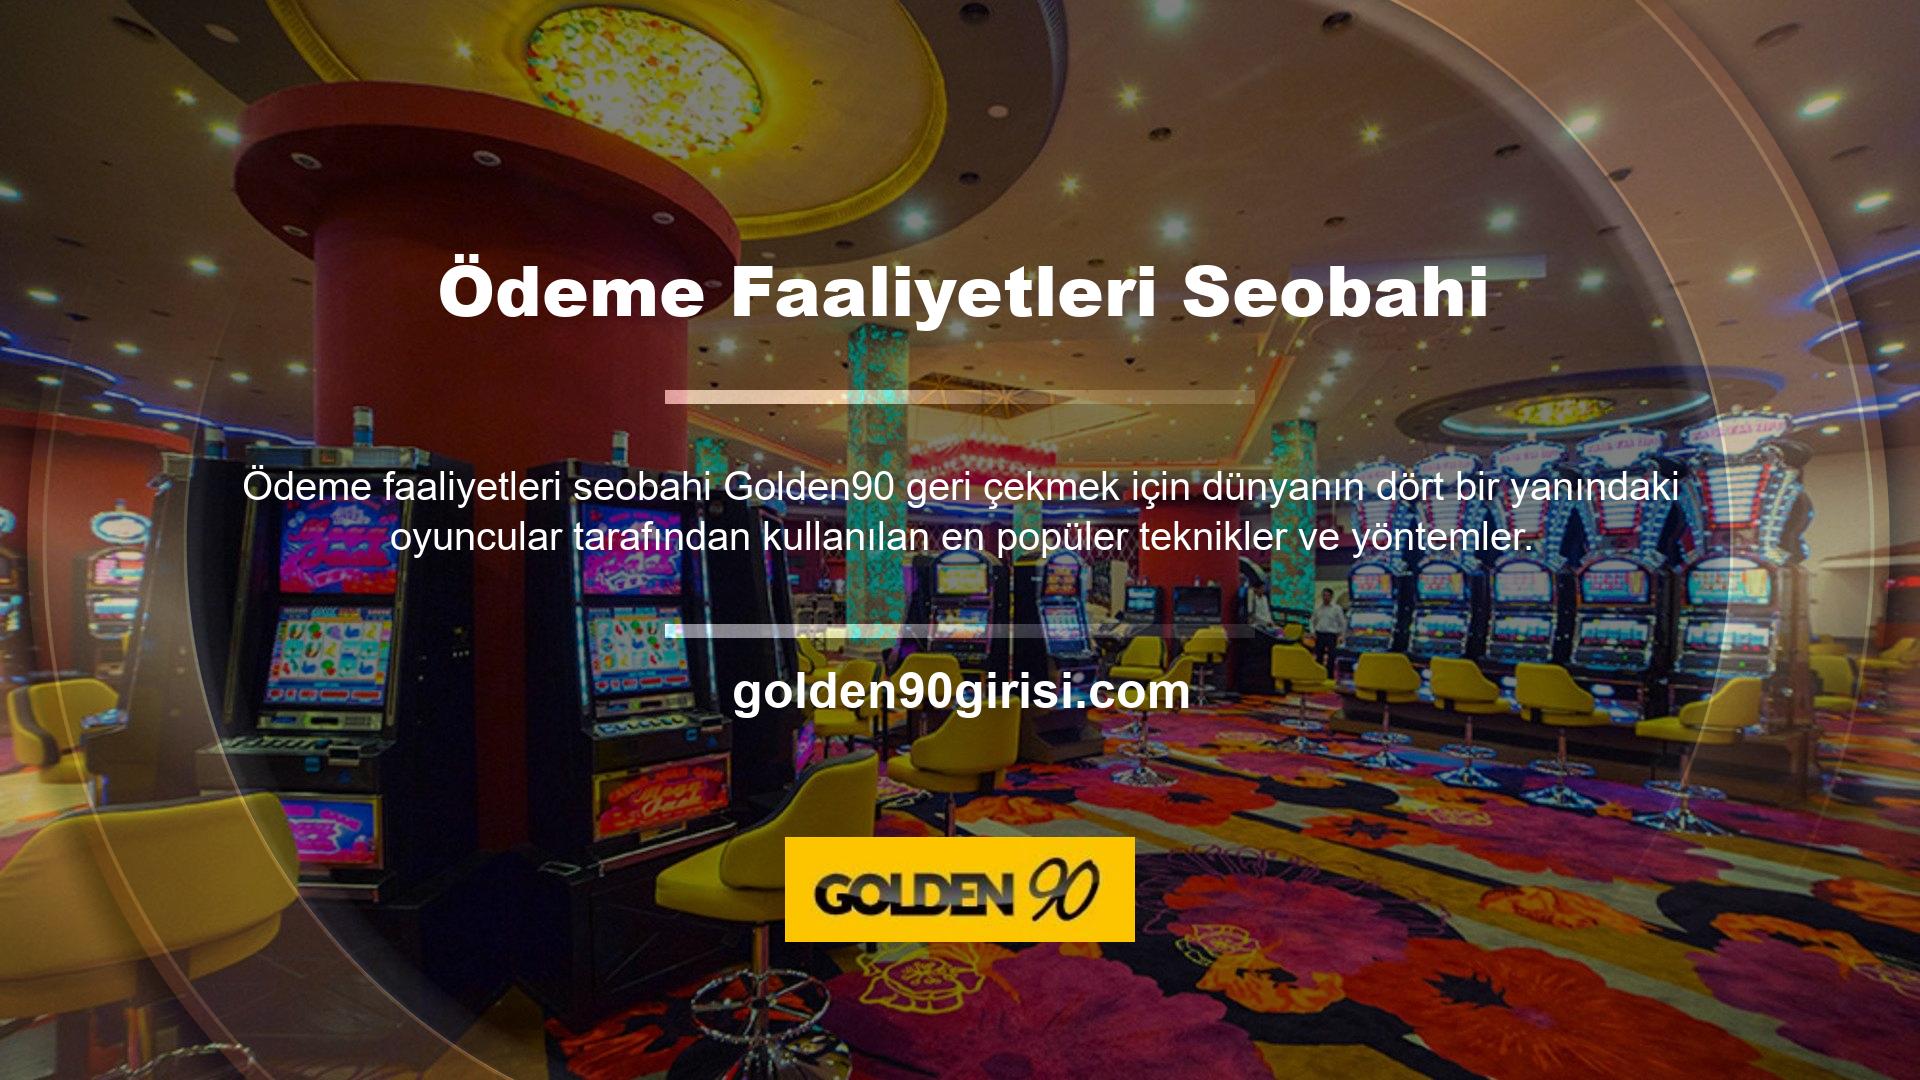 Golden90, günümüzde çevrimiçi casino oyunlarının en gelişmiş alanlarından biridir